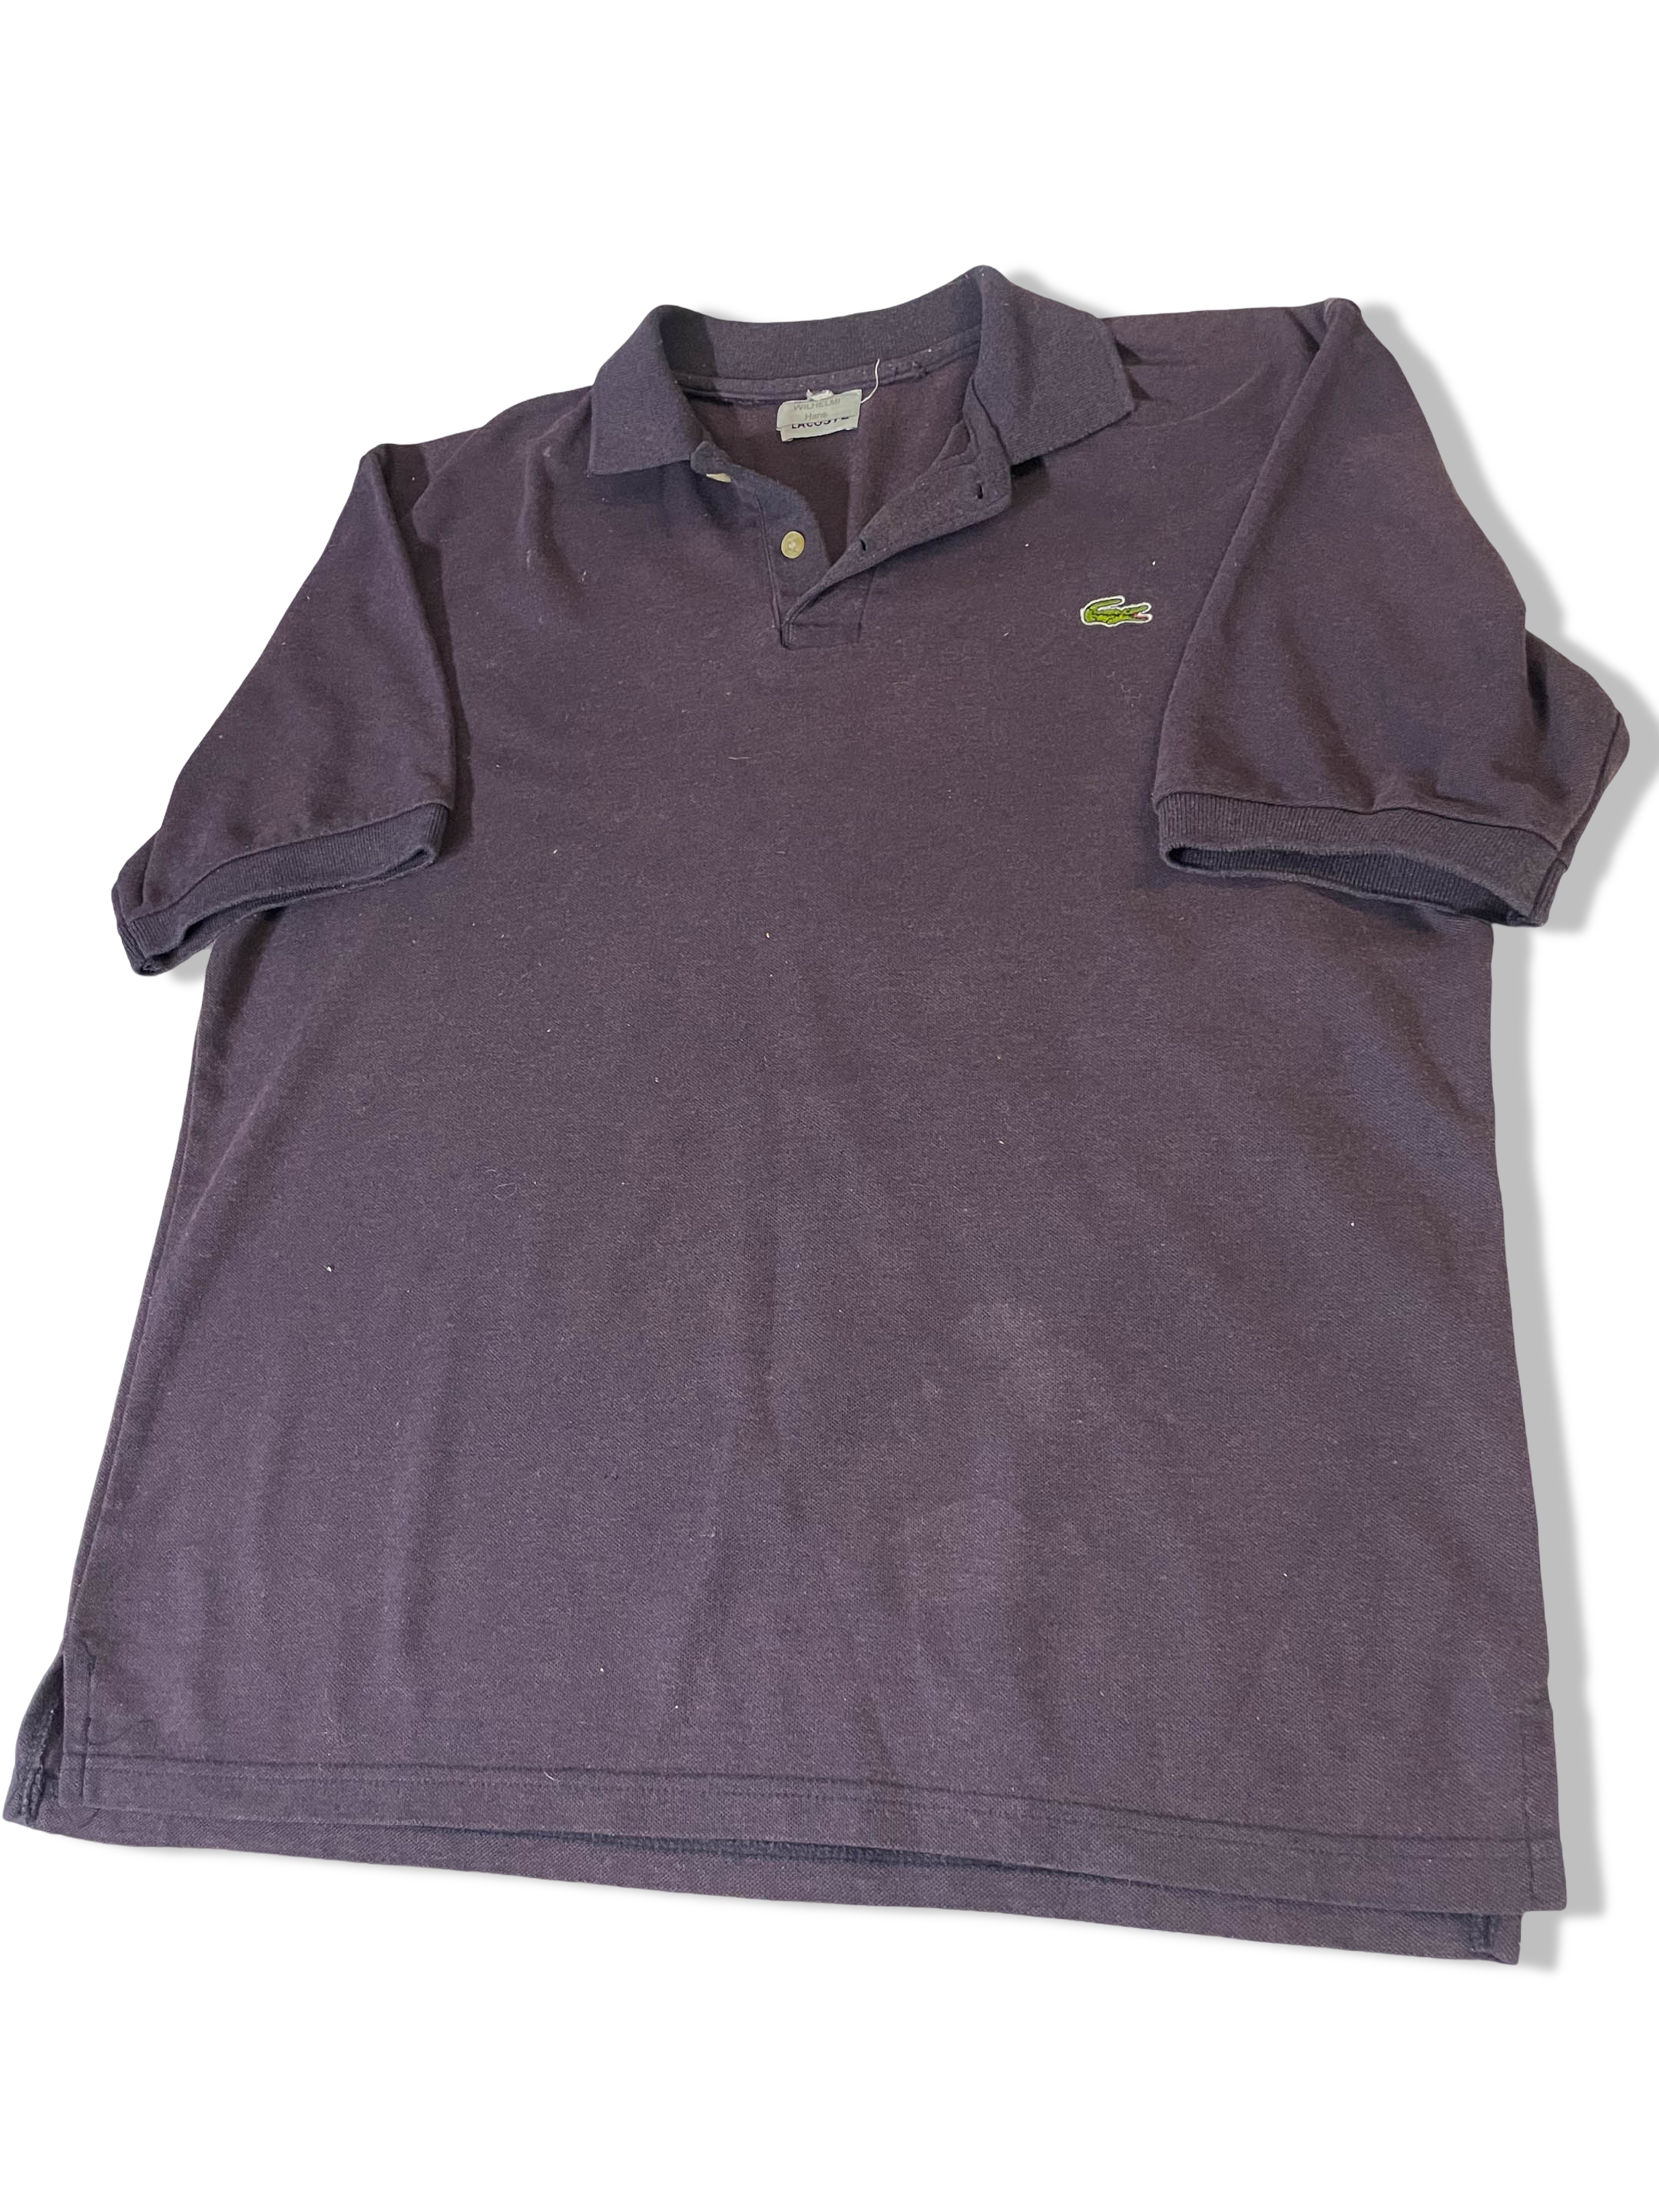 Vintage mens regular fit Hans Lacoste navy plain polo shirt size M/L|L28w23|3767<br>